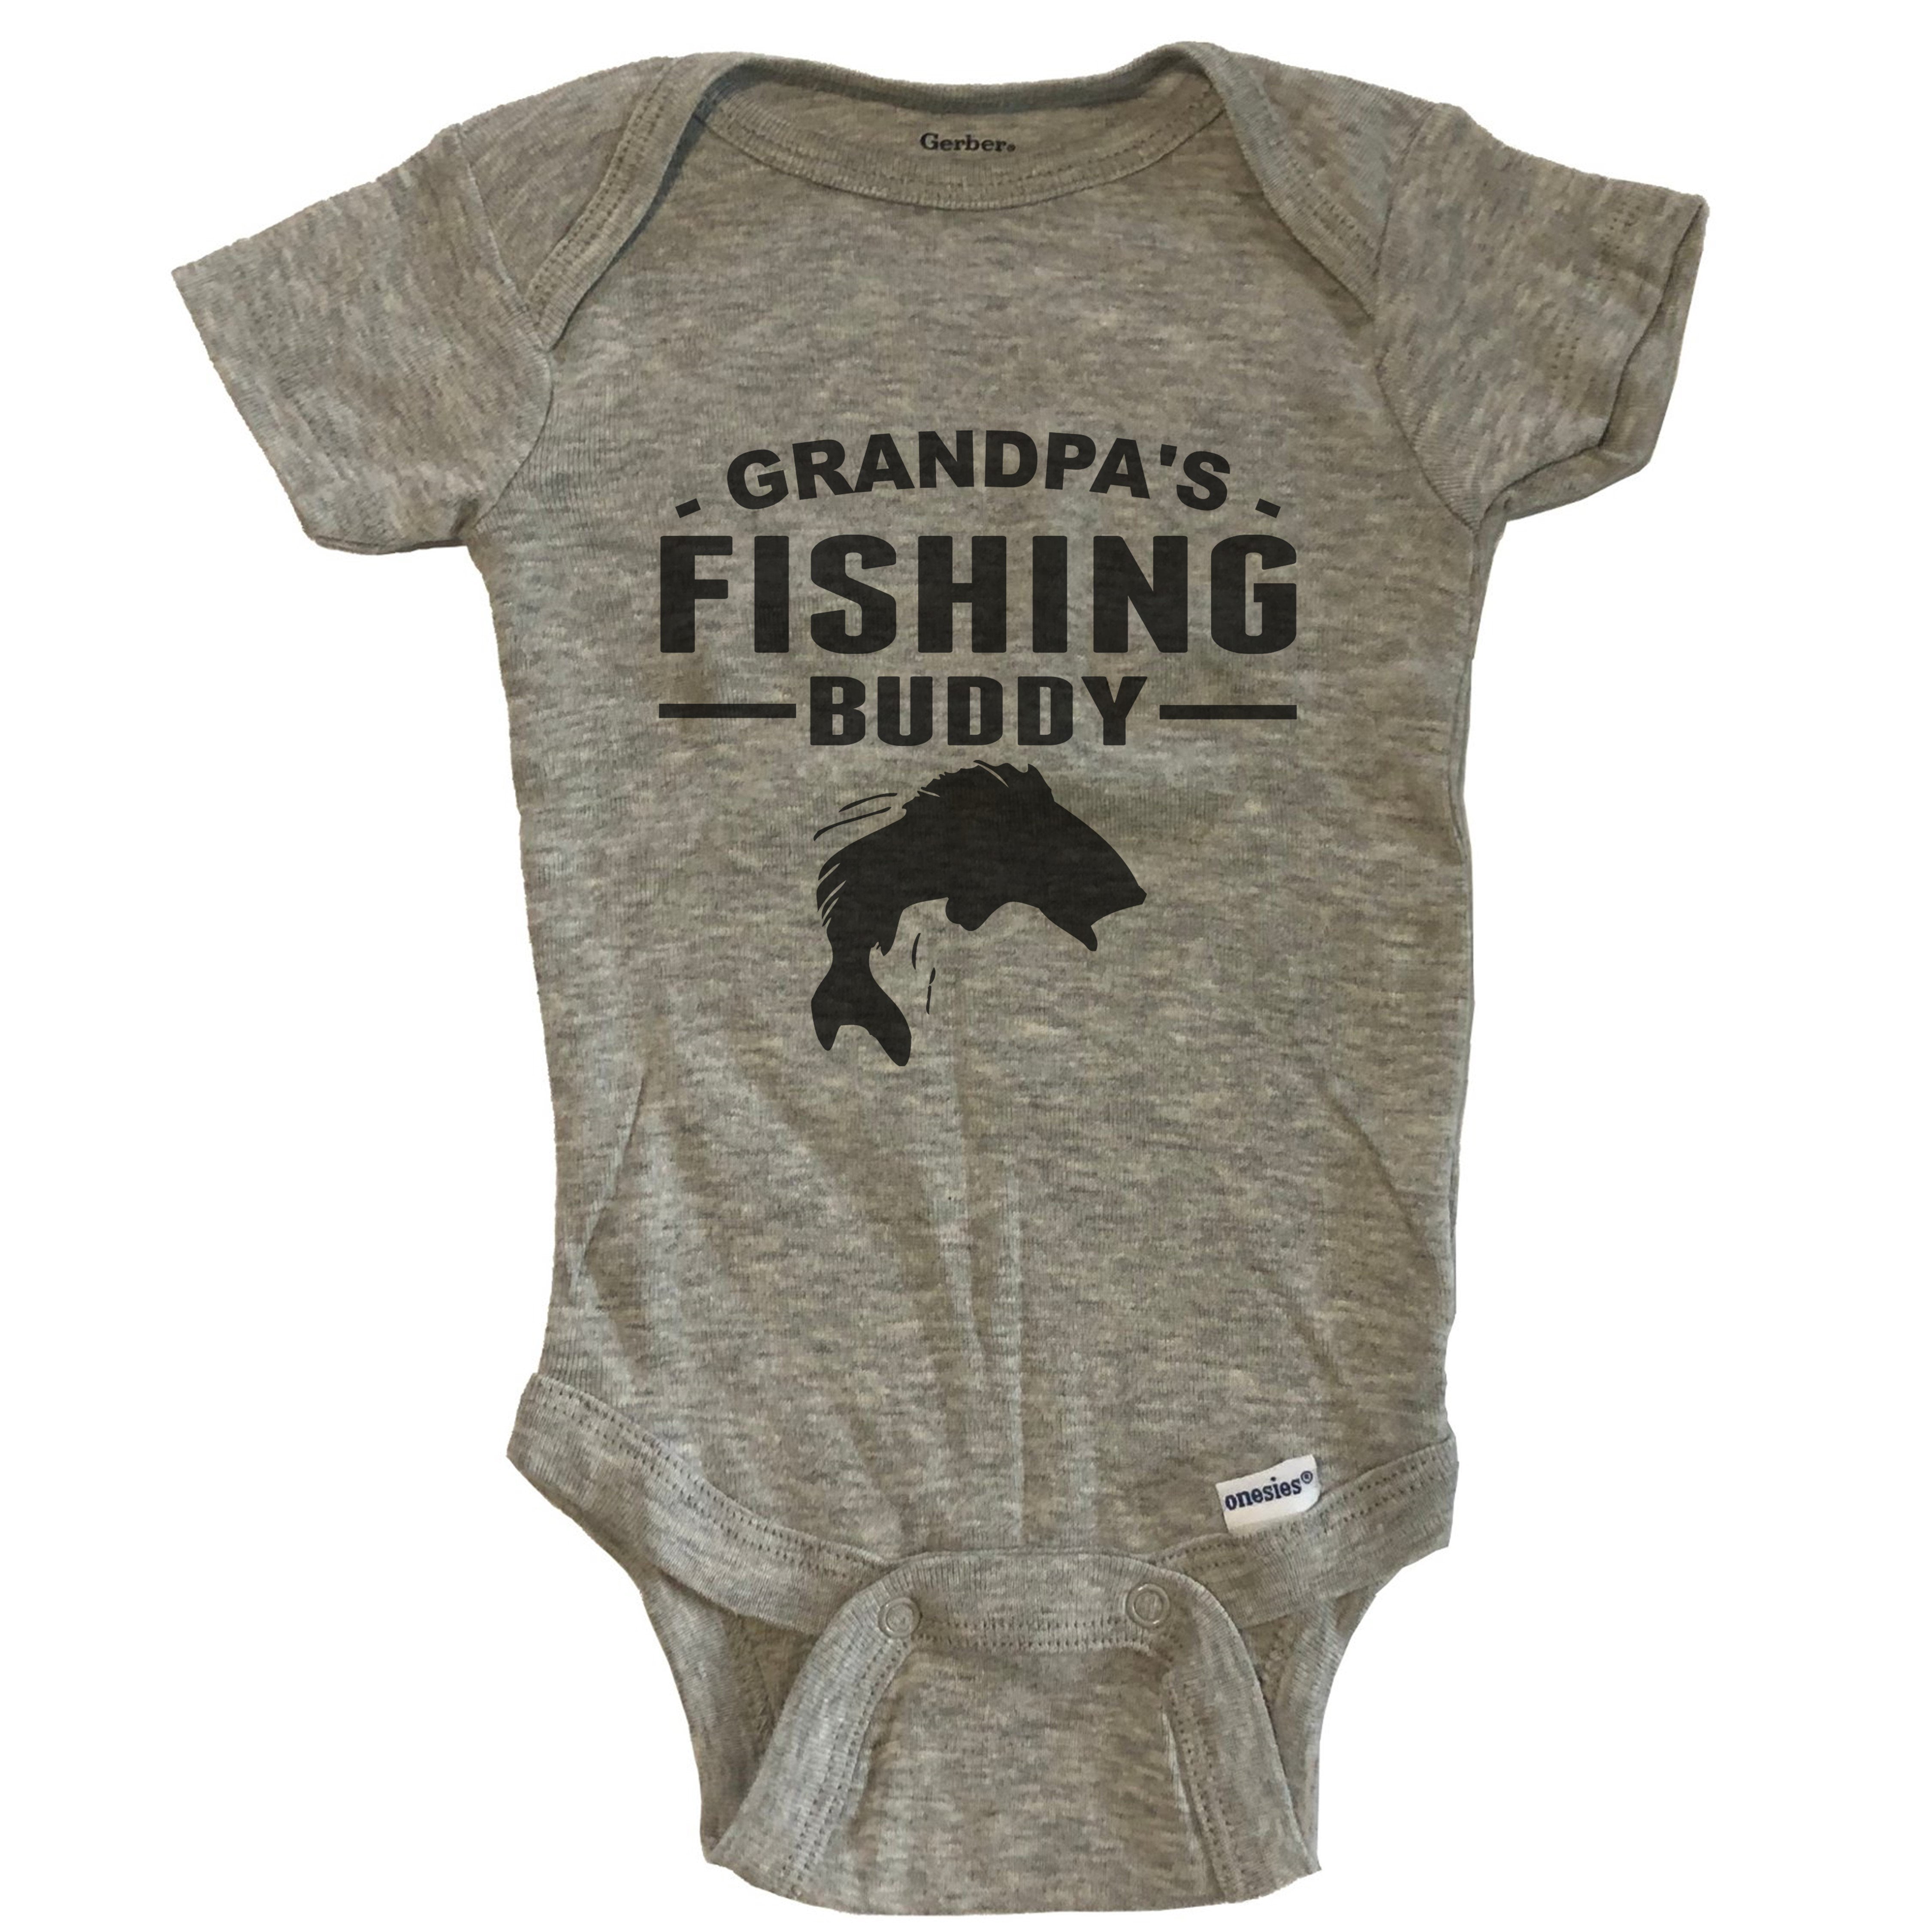 Grandpa's Fishing Buddy Cute Fishing Baby Bodysuit for Grandchild